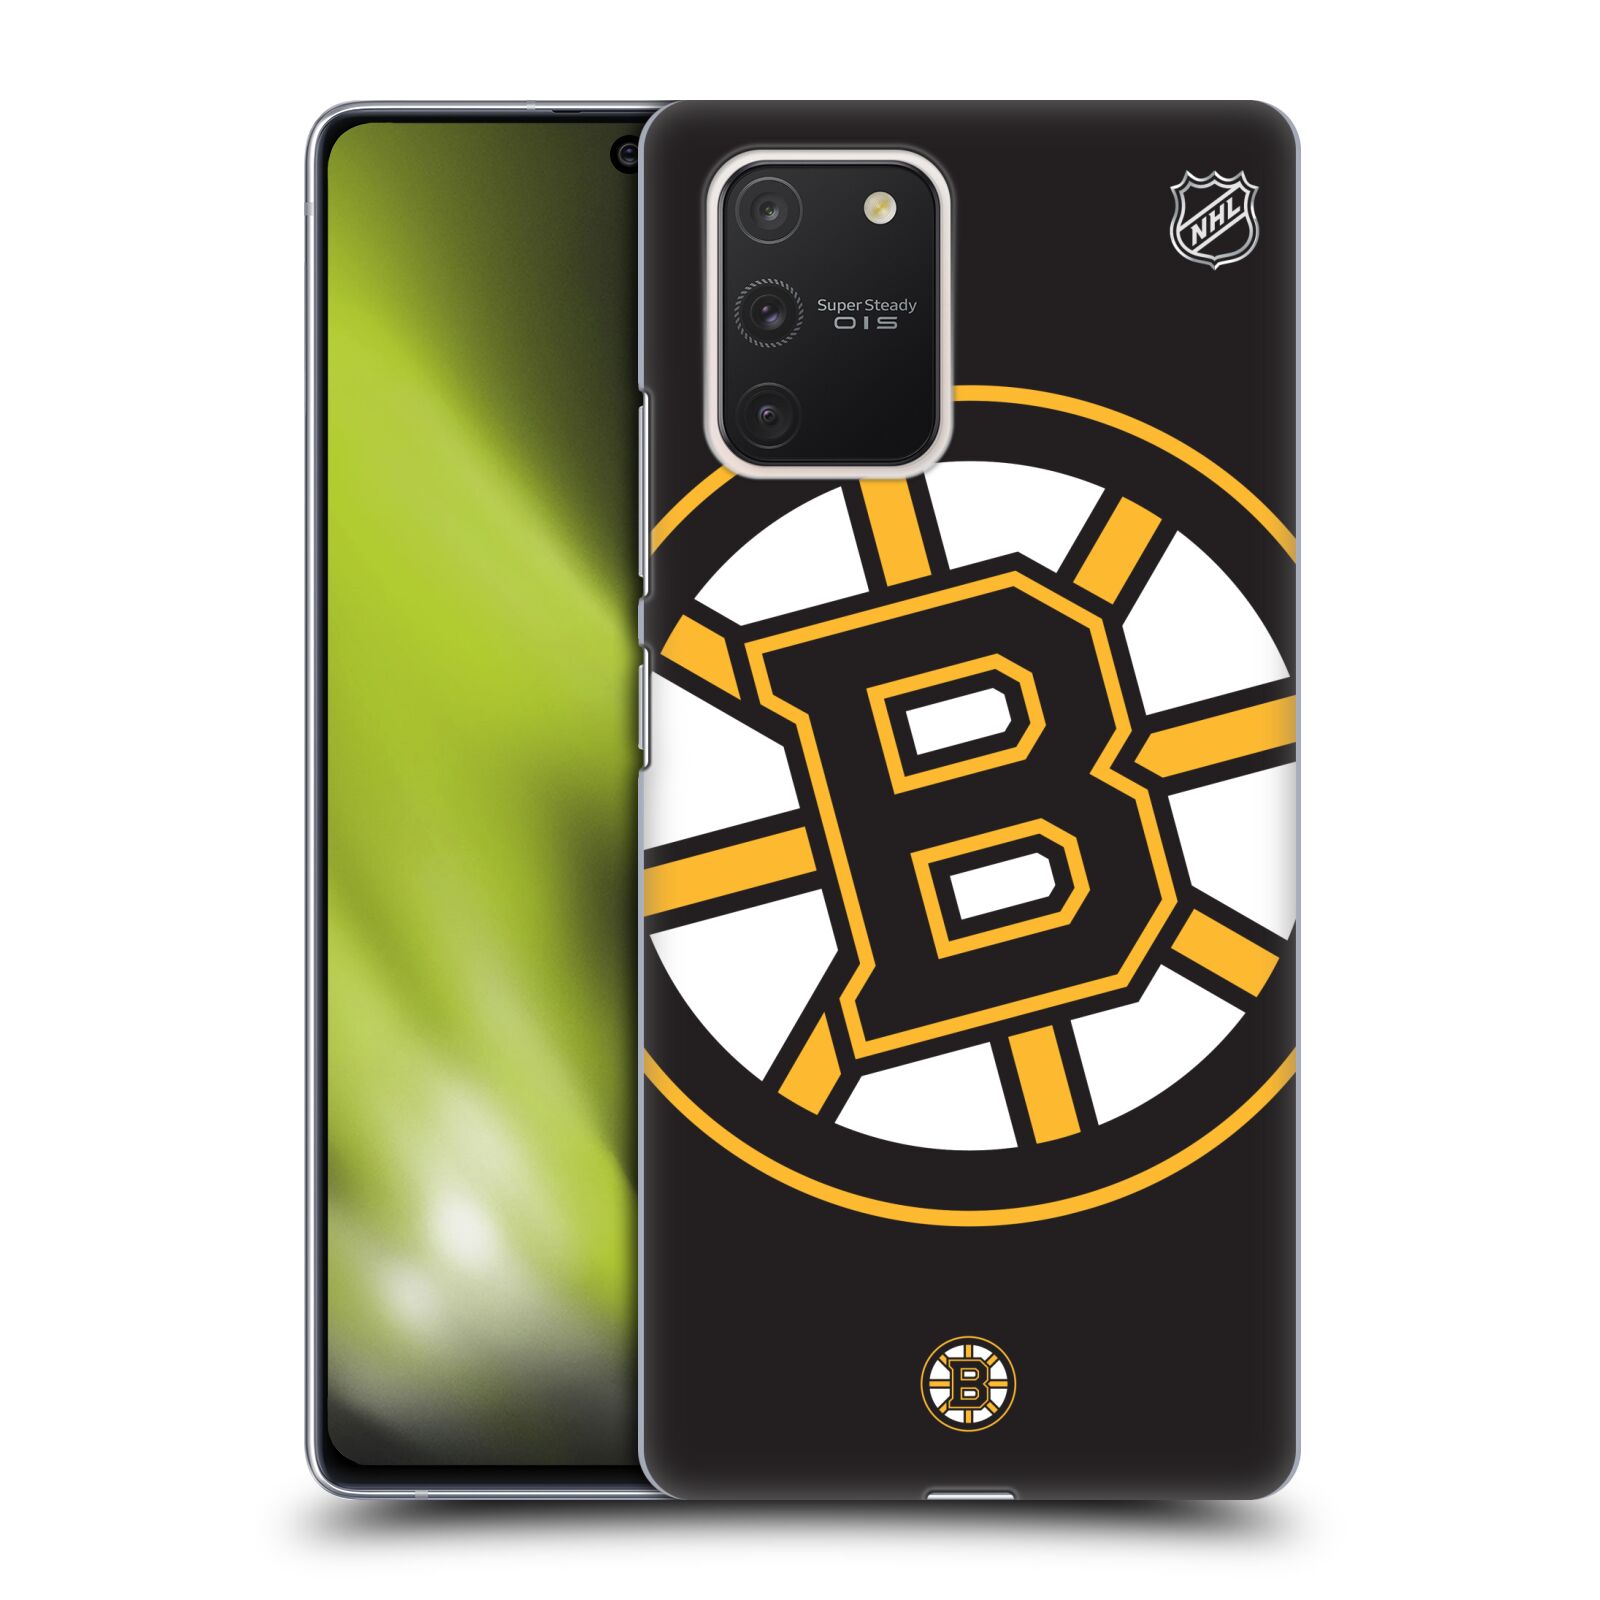 Pouzdro na mobil Samsung Galaxy S10 LITE - HEAD CASE - Hokej NHL - Boston Bruins - velký znak